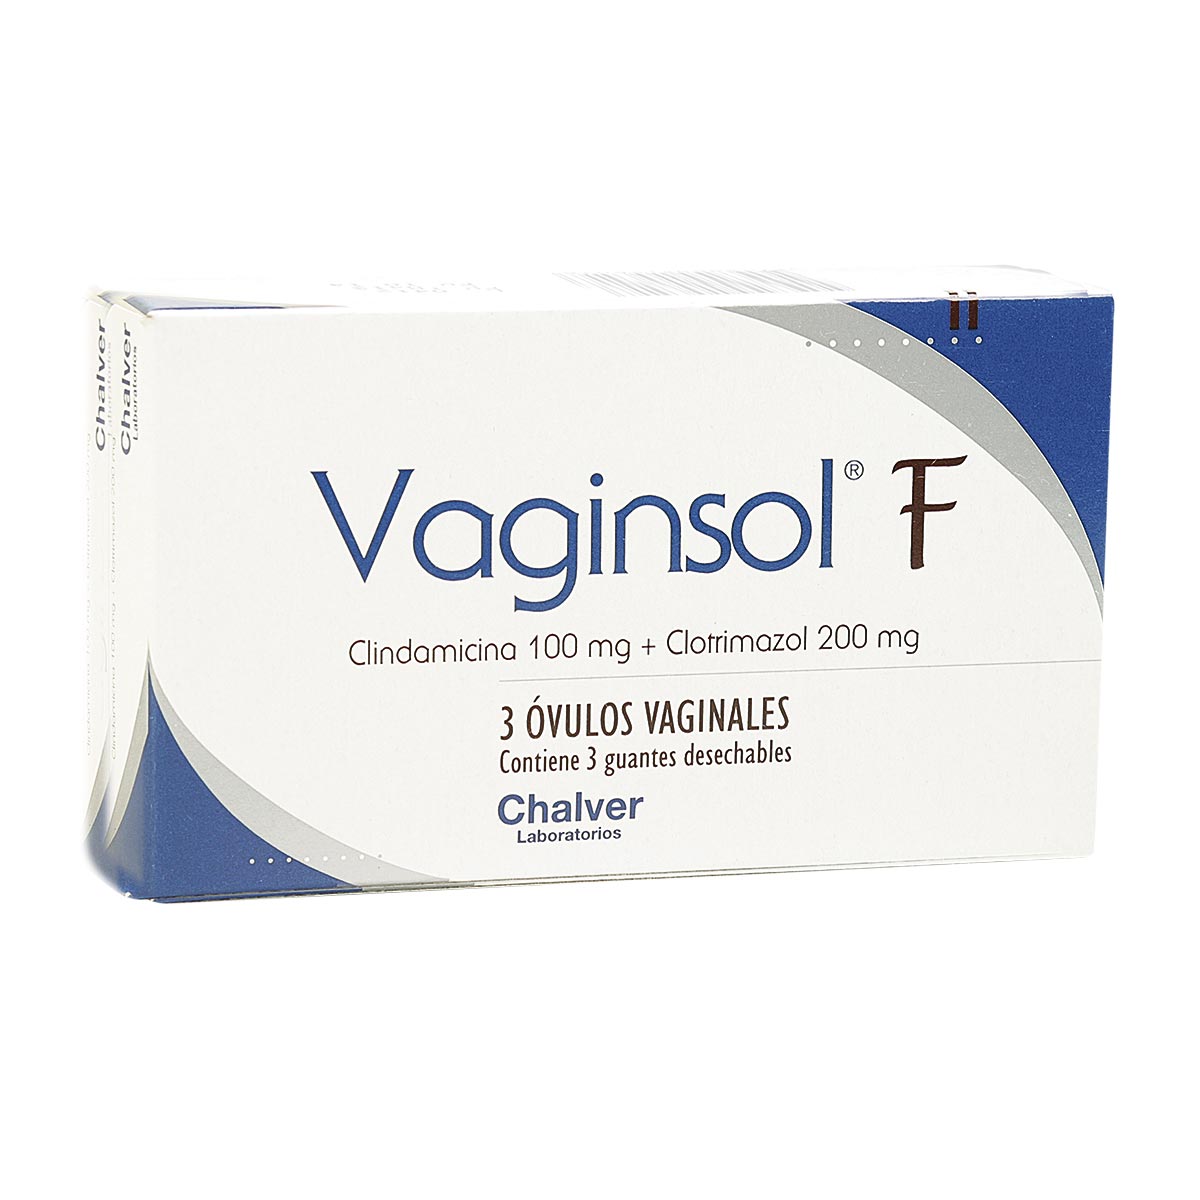 Vaginsol F 200 mg / 100 mg Óvulo